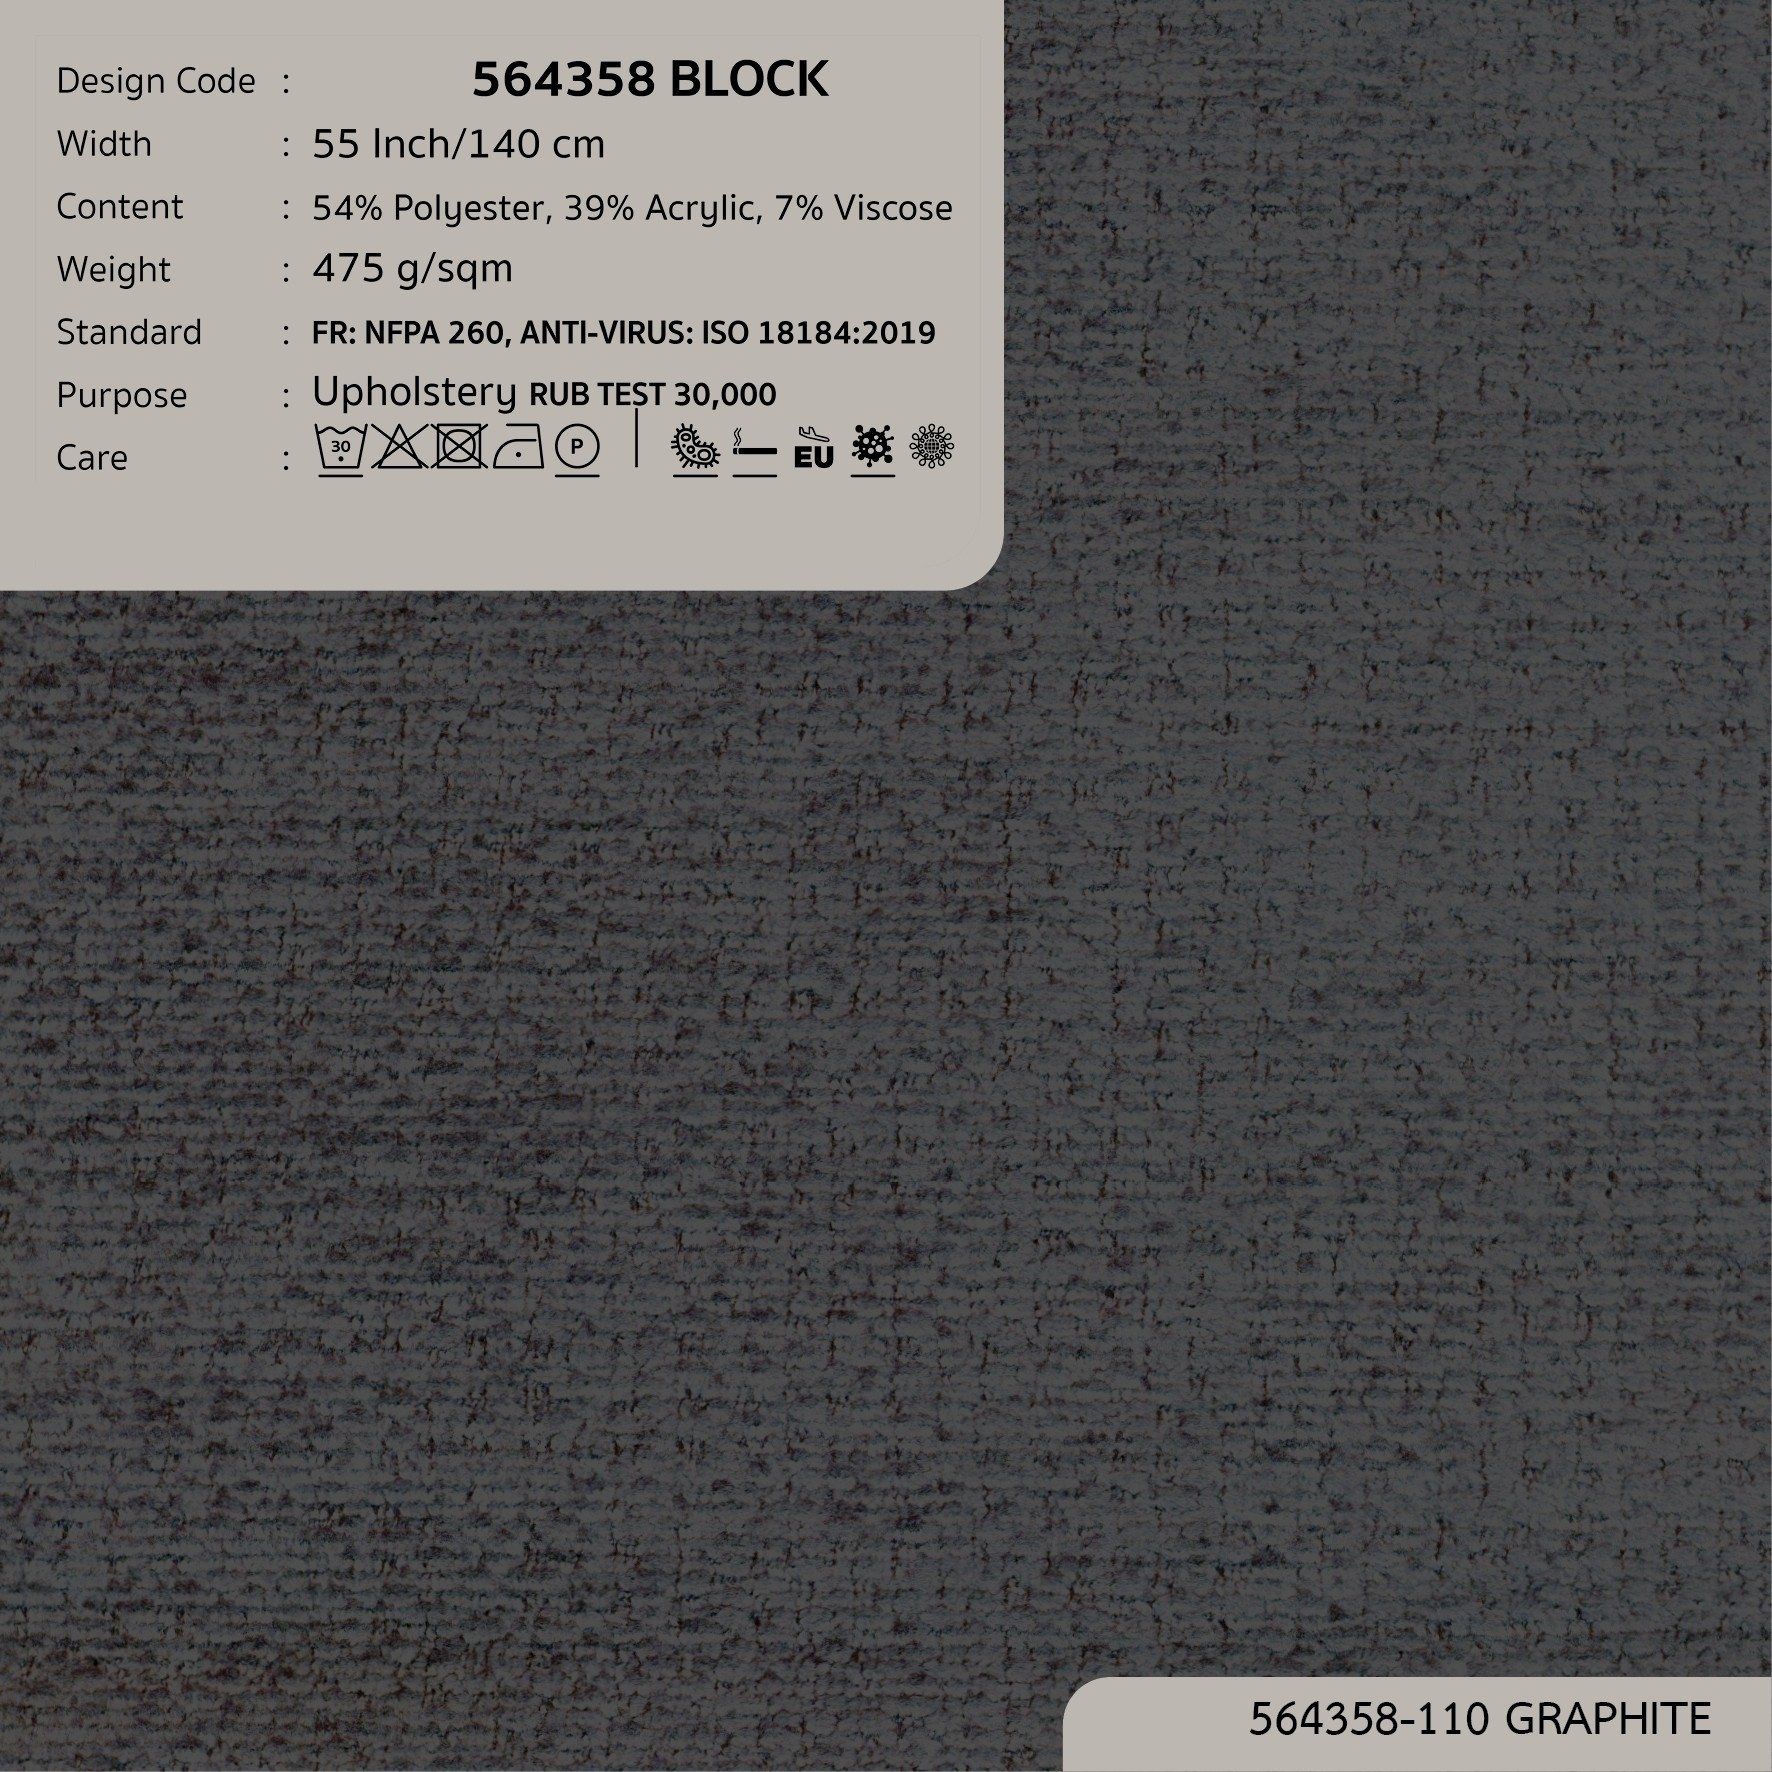  BLOCK 564358 có sẵn tại flagship store 